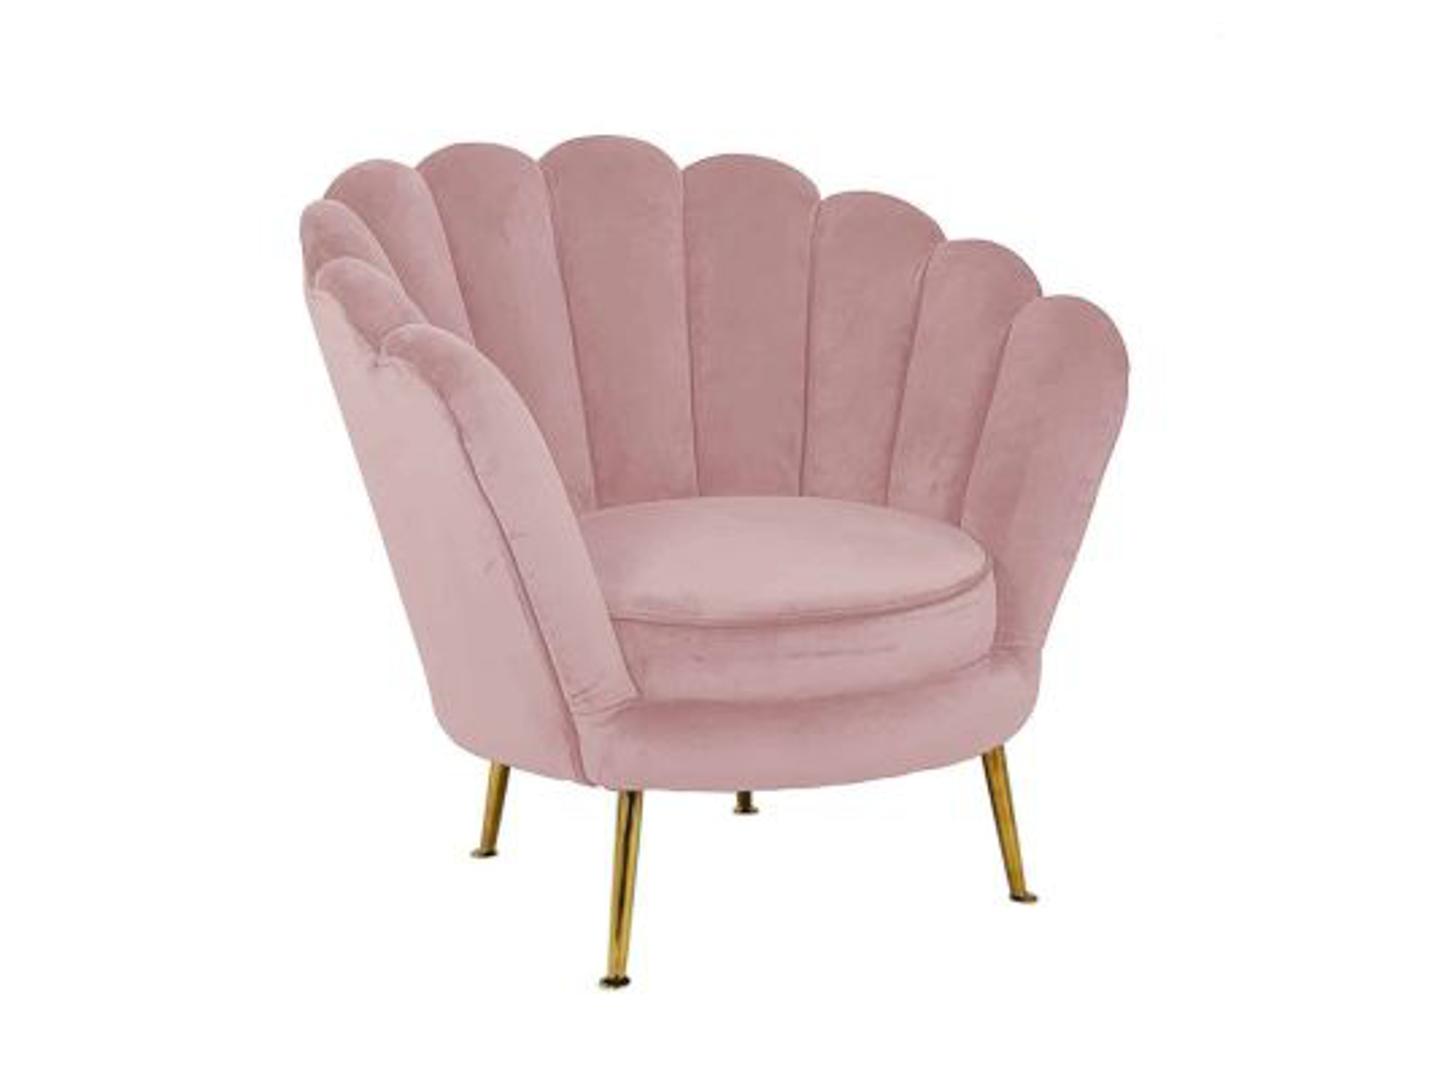 Luksuzan komad - fotelja od najmekšeg baršuna iz ponude Mobel Landa